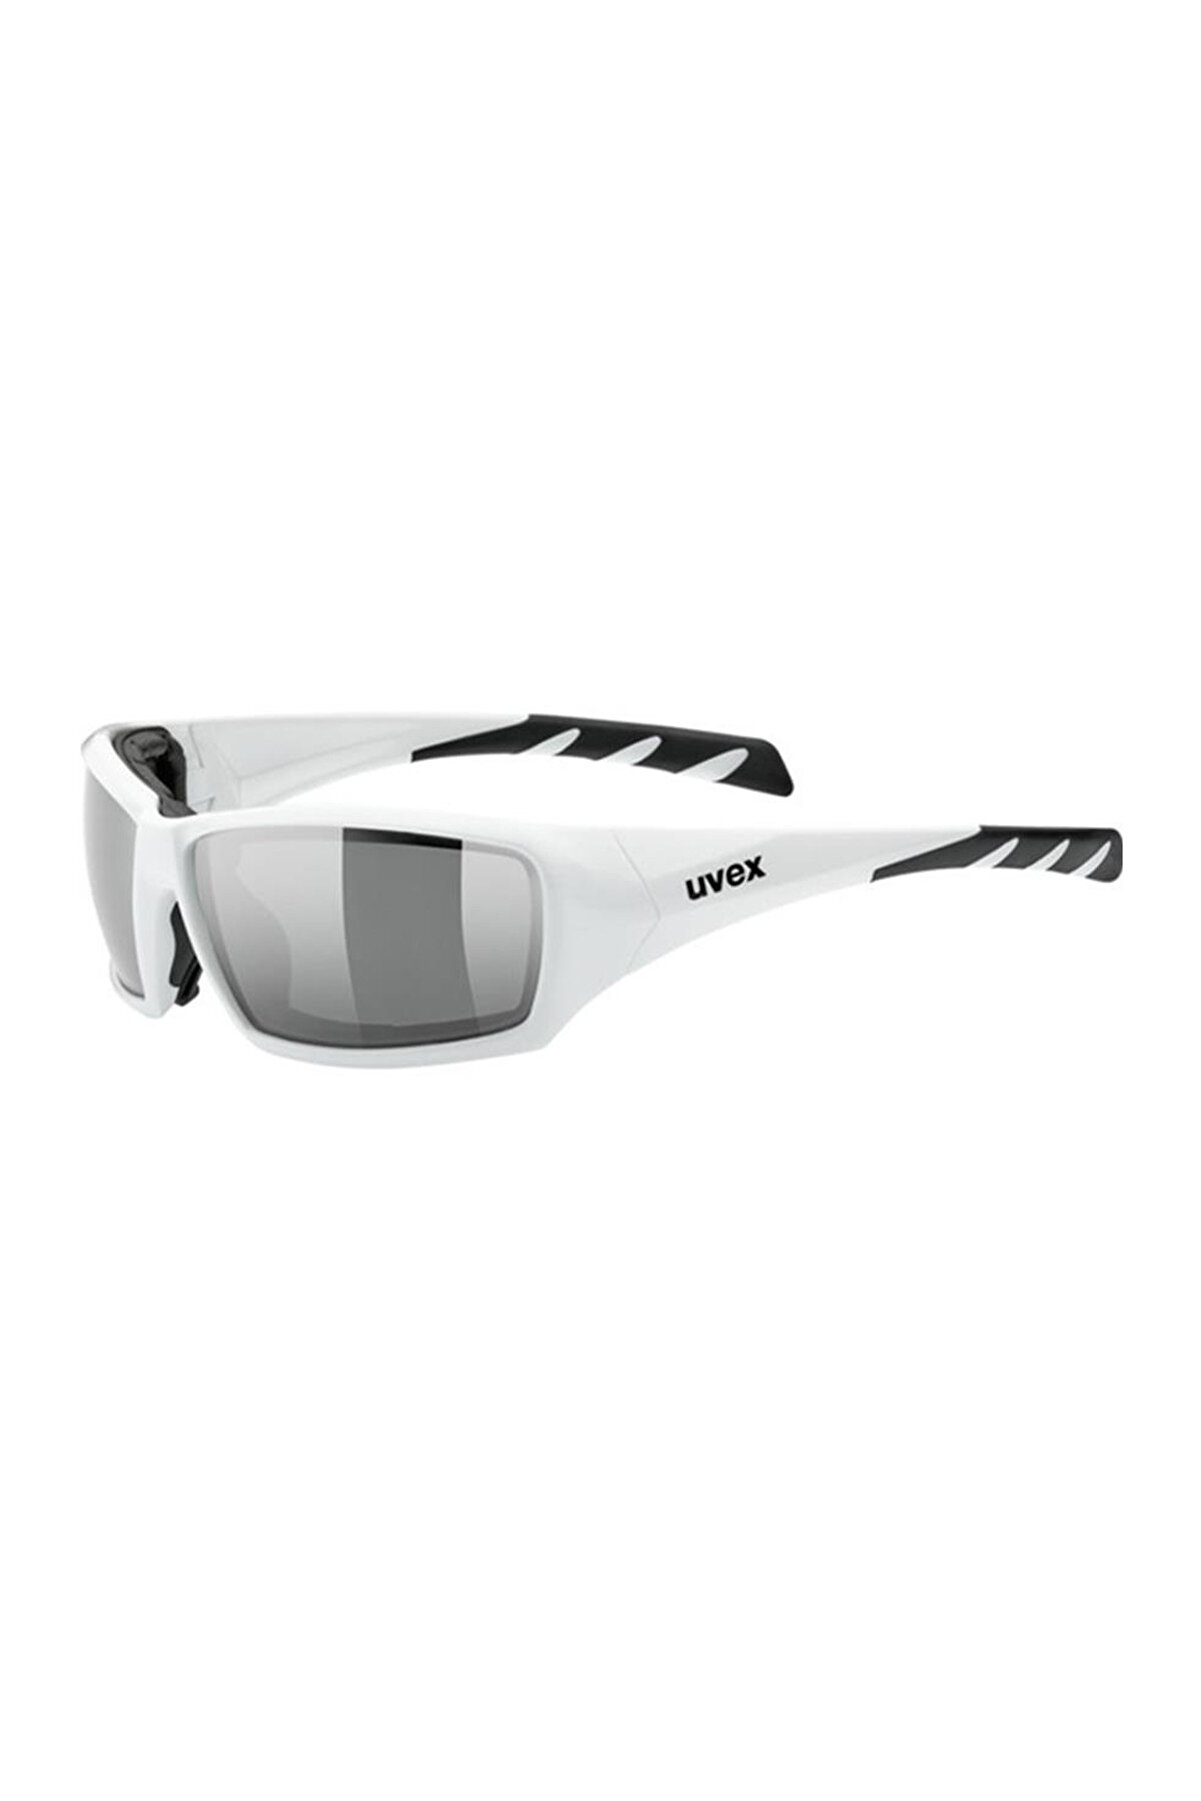 Uvex Sportstyle 308 White/Mirror Silver Güneş Gözlüğü